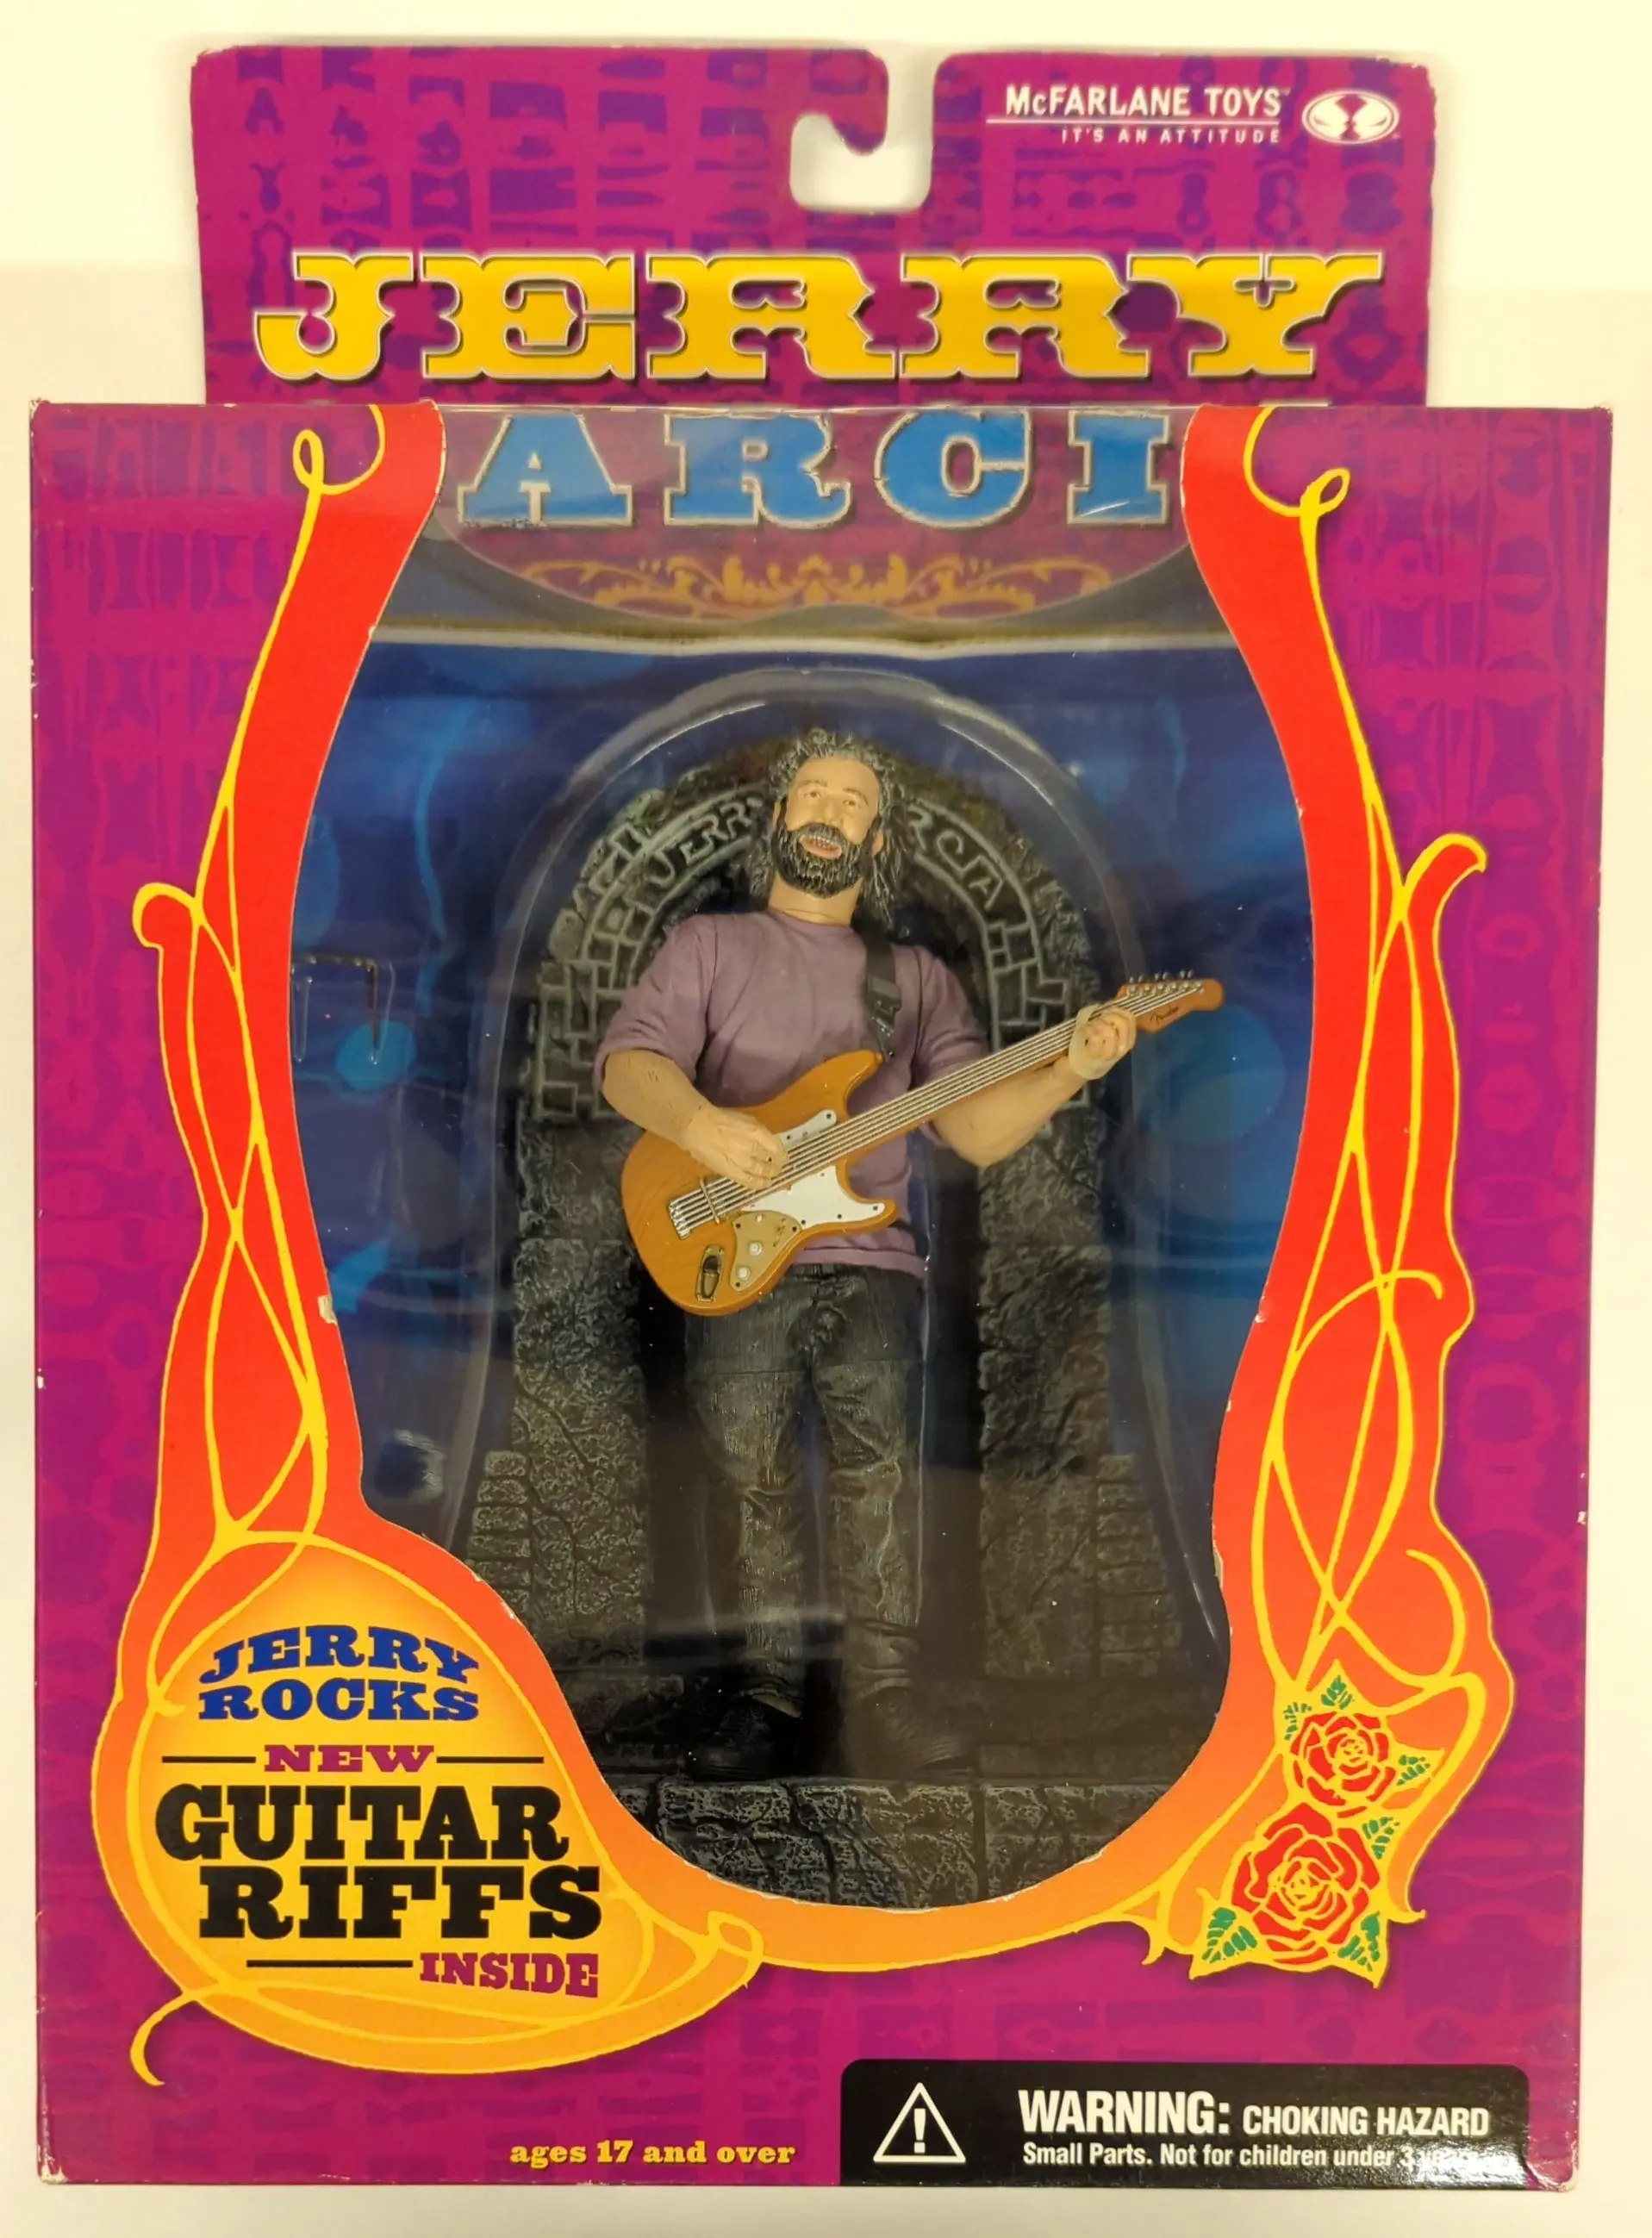 Figure - Jerry Garcia